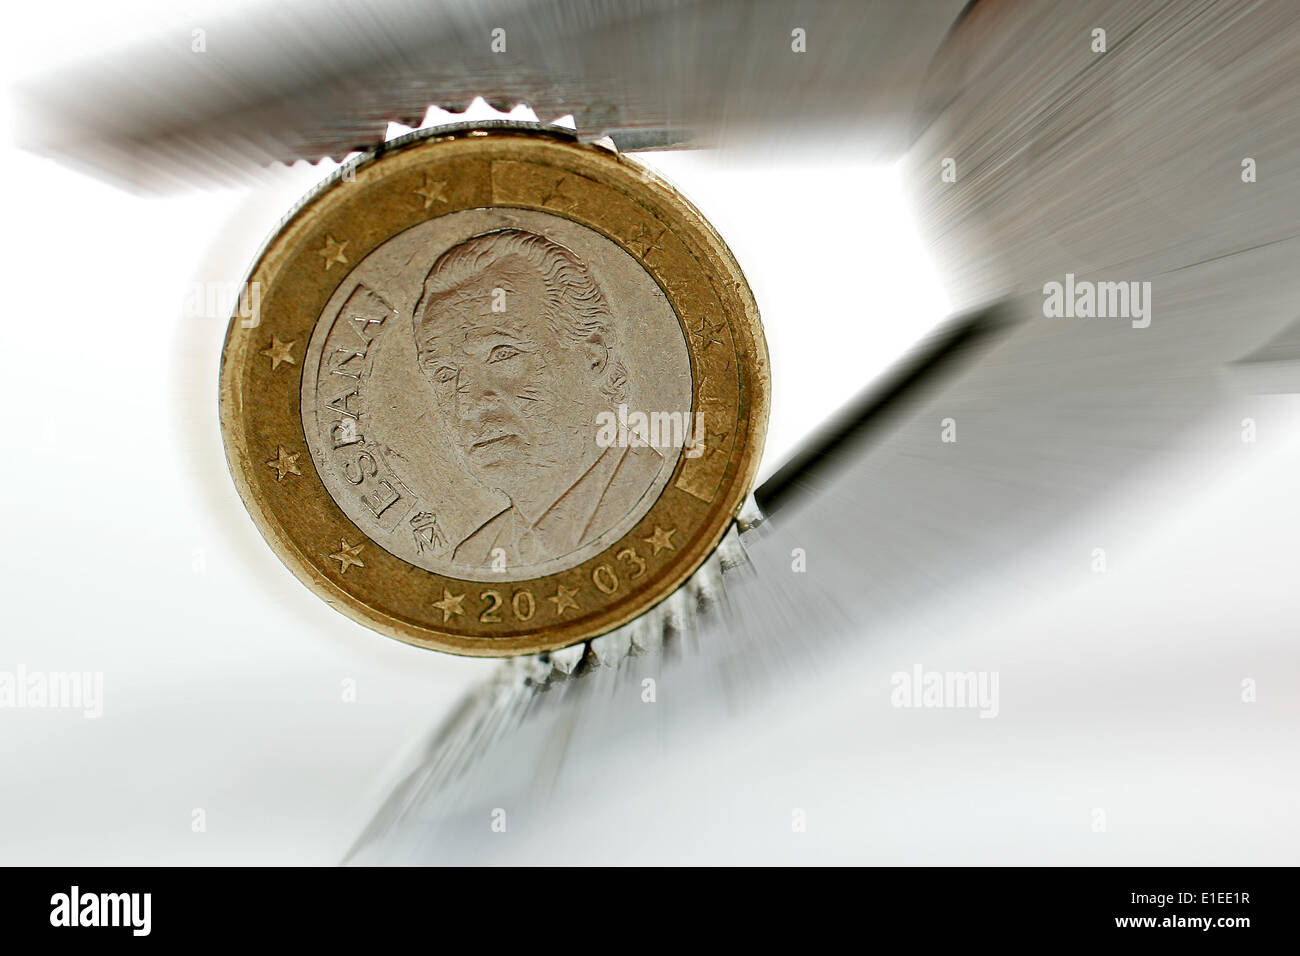 Eine Spanische Euro-Münze Mit Dem Konterfei von König Juan Carlos ist in Einer Zange eingeklemmt Stockfoto